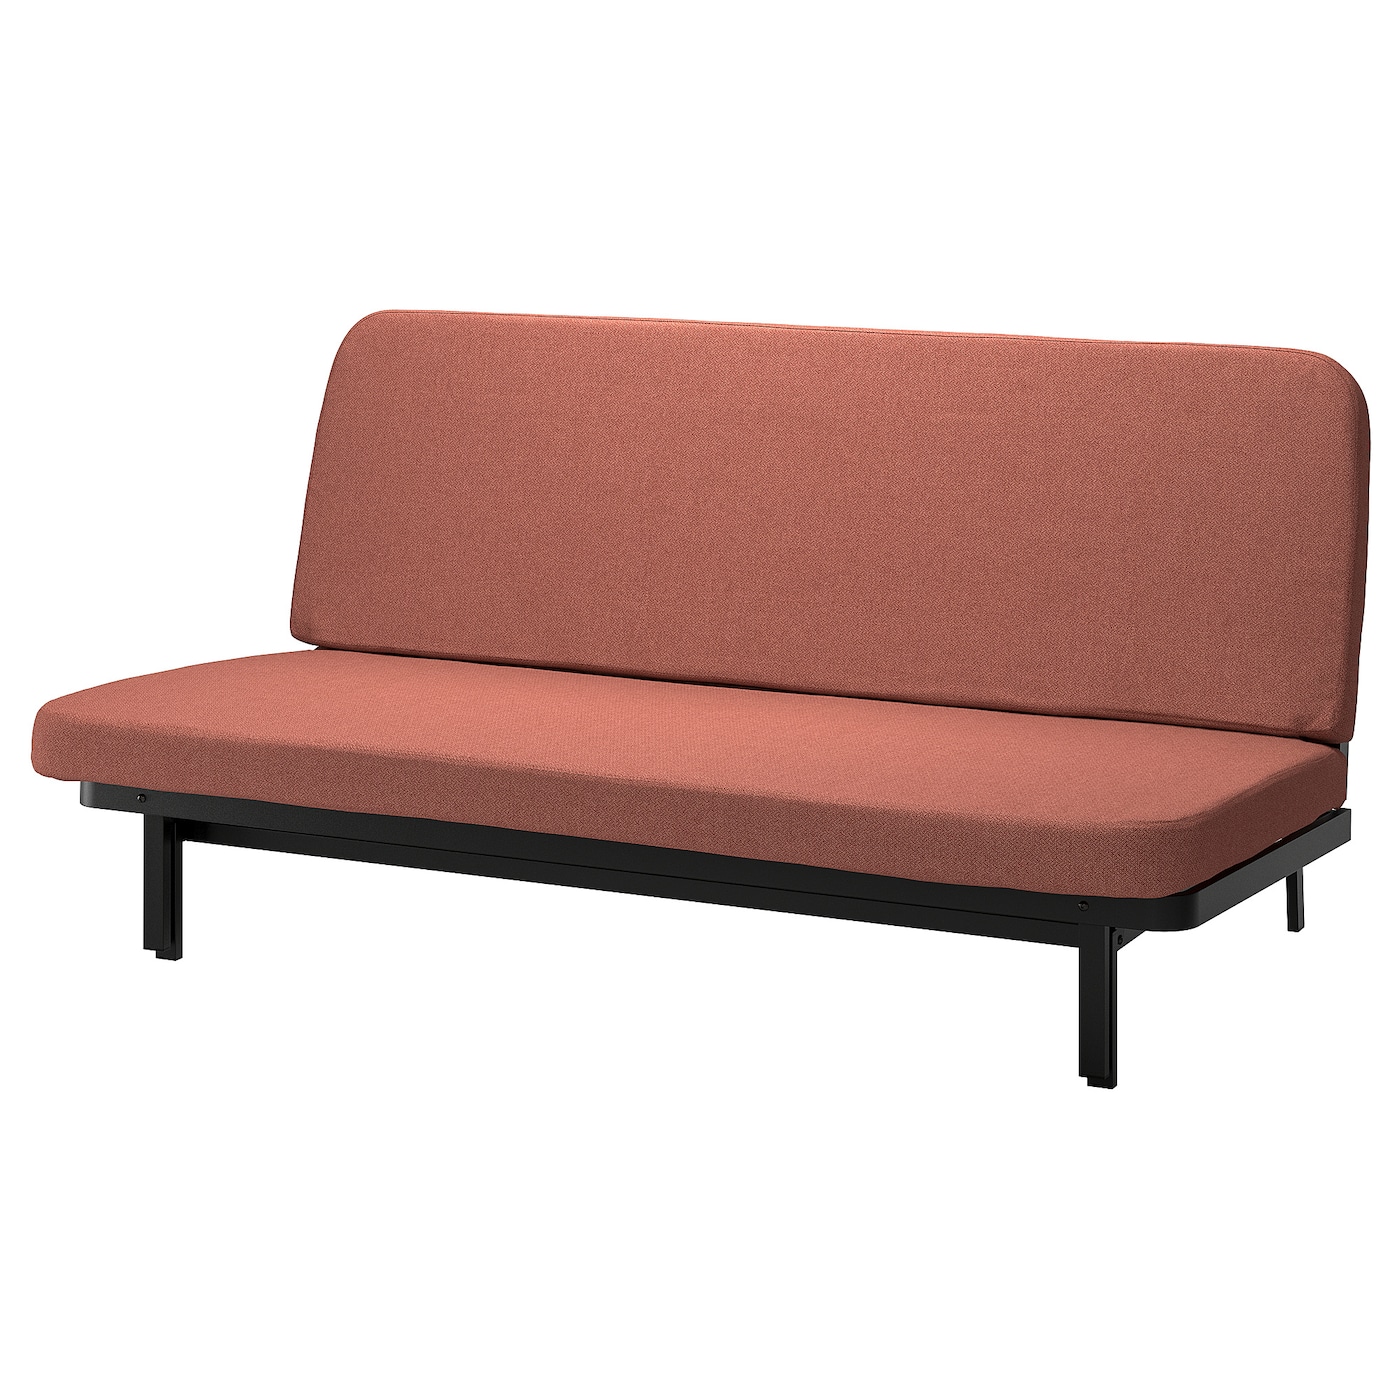 NYHAMN 3-местный диван-кровать, пружинный матрас в комплекте/Скартофта красный/коричневый IKEA диван кровать малютка кордрой красный